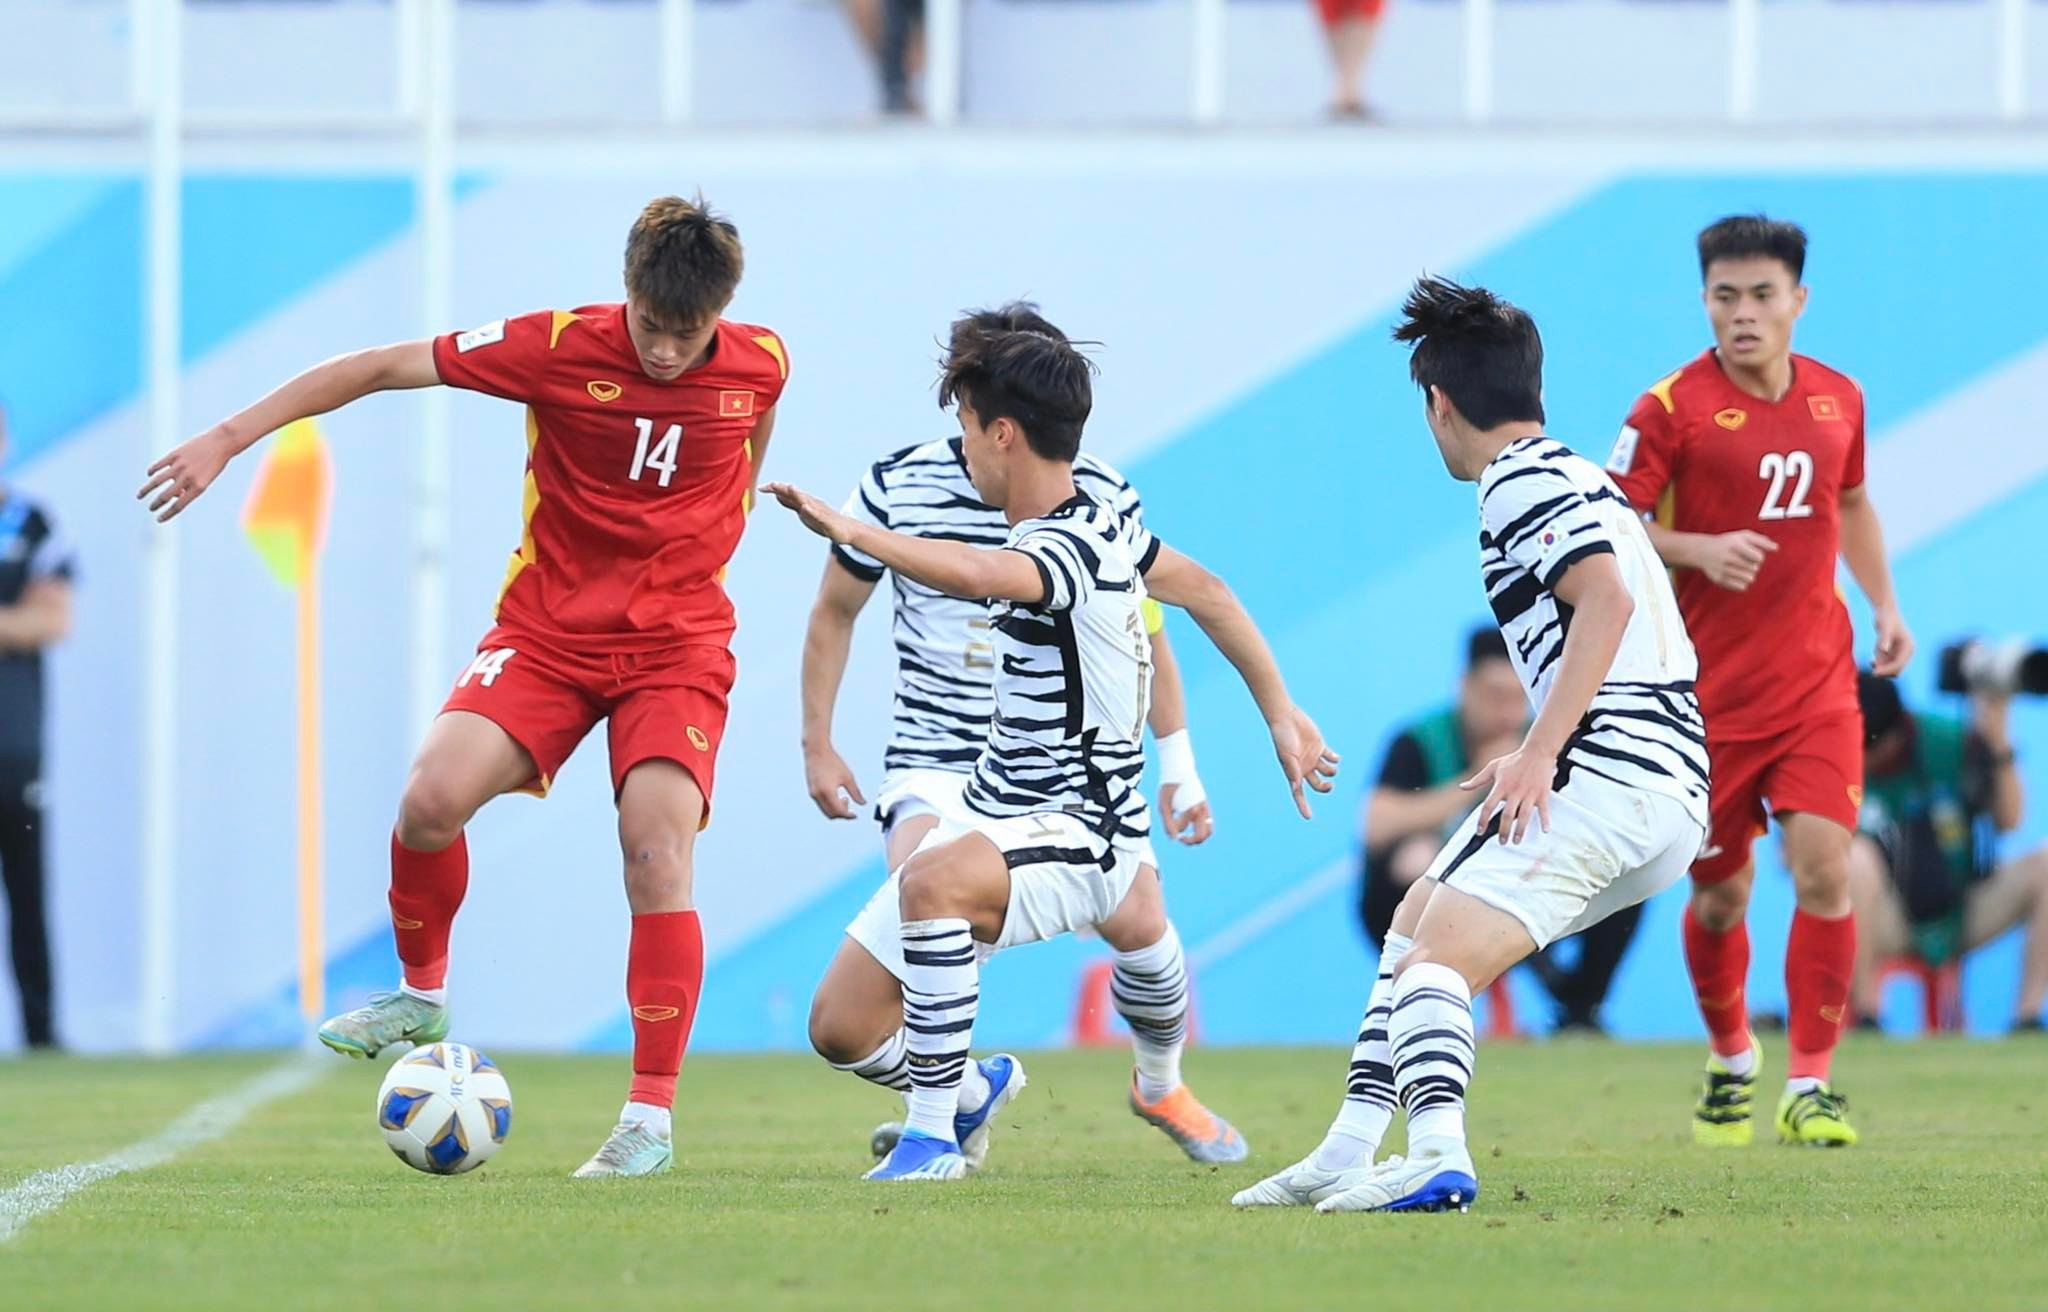 U23 Việt Nam tạo nên lịch sử khi cầm hòa U23 Hàn Quốc trong một giải đấu chính thức - Ảnh: Quỳnh Anh 